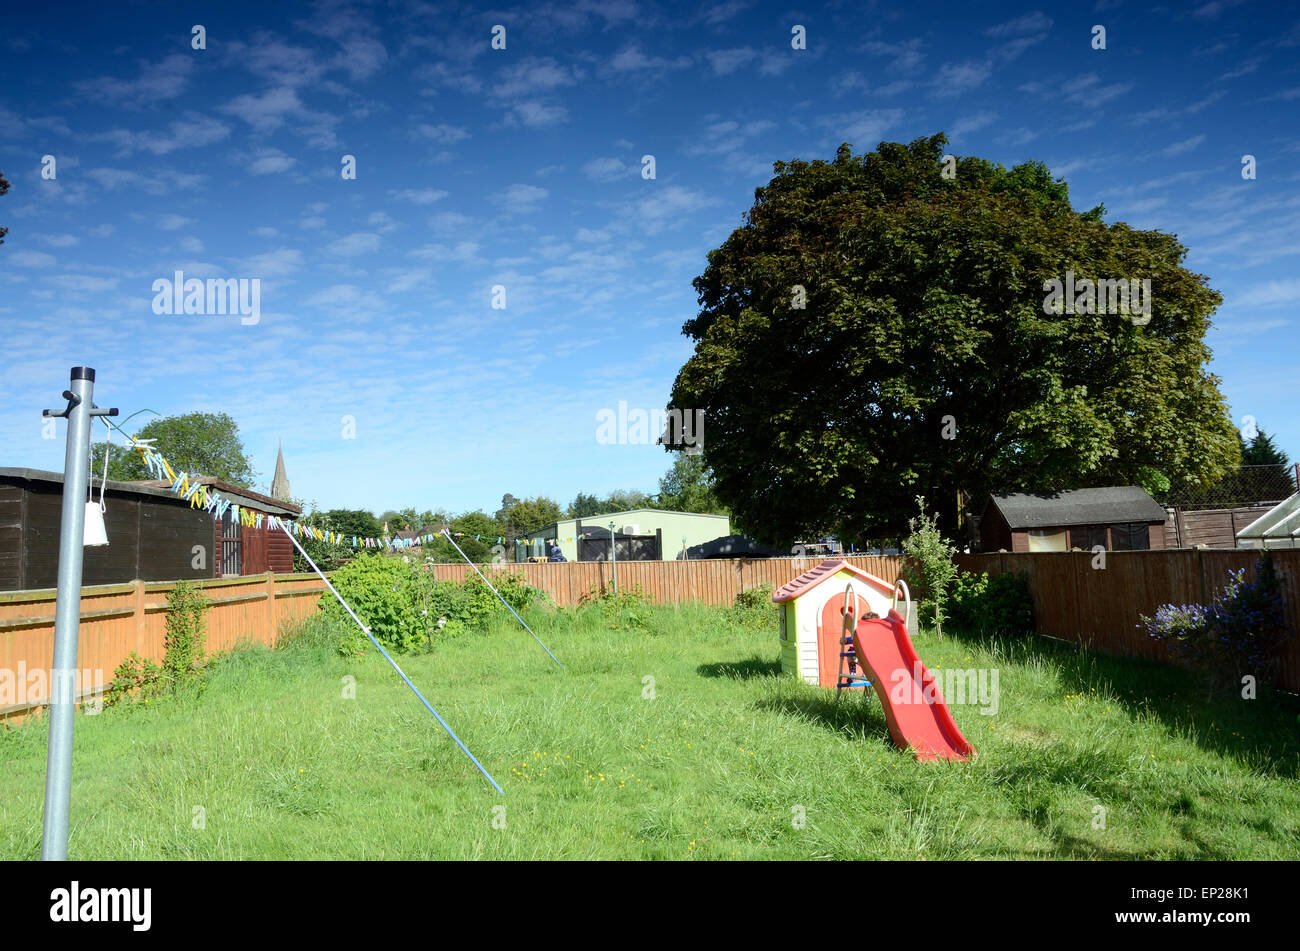 Una vista di un giardino sul retro con ricoperta di erba, una linea di lavaggio, un gioco del bambino casa e una slitta. Foto Stock